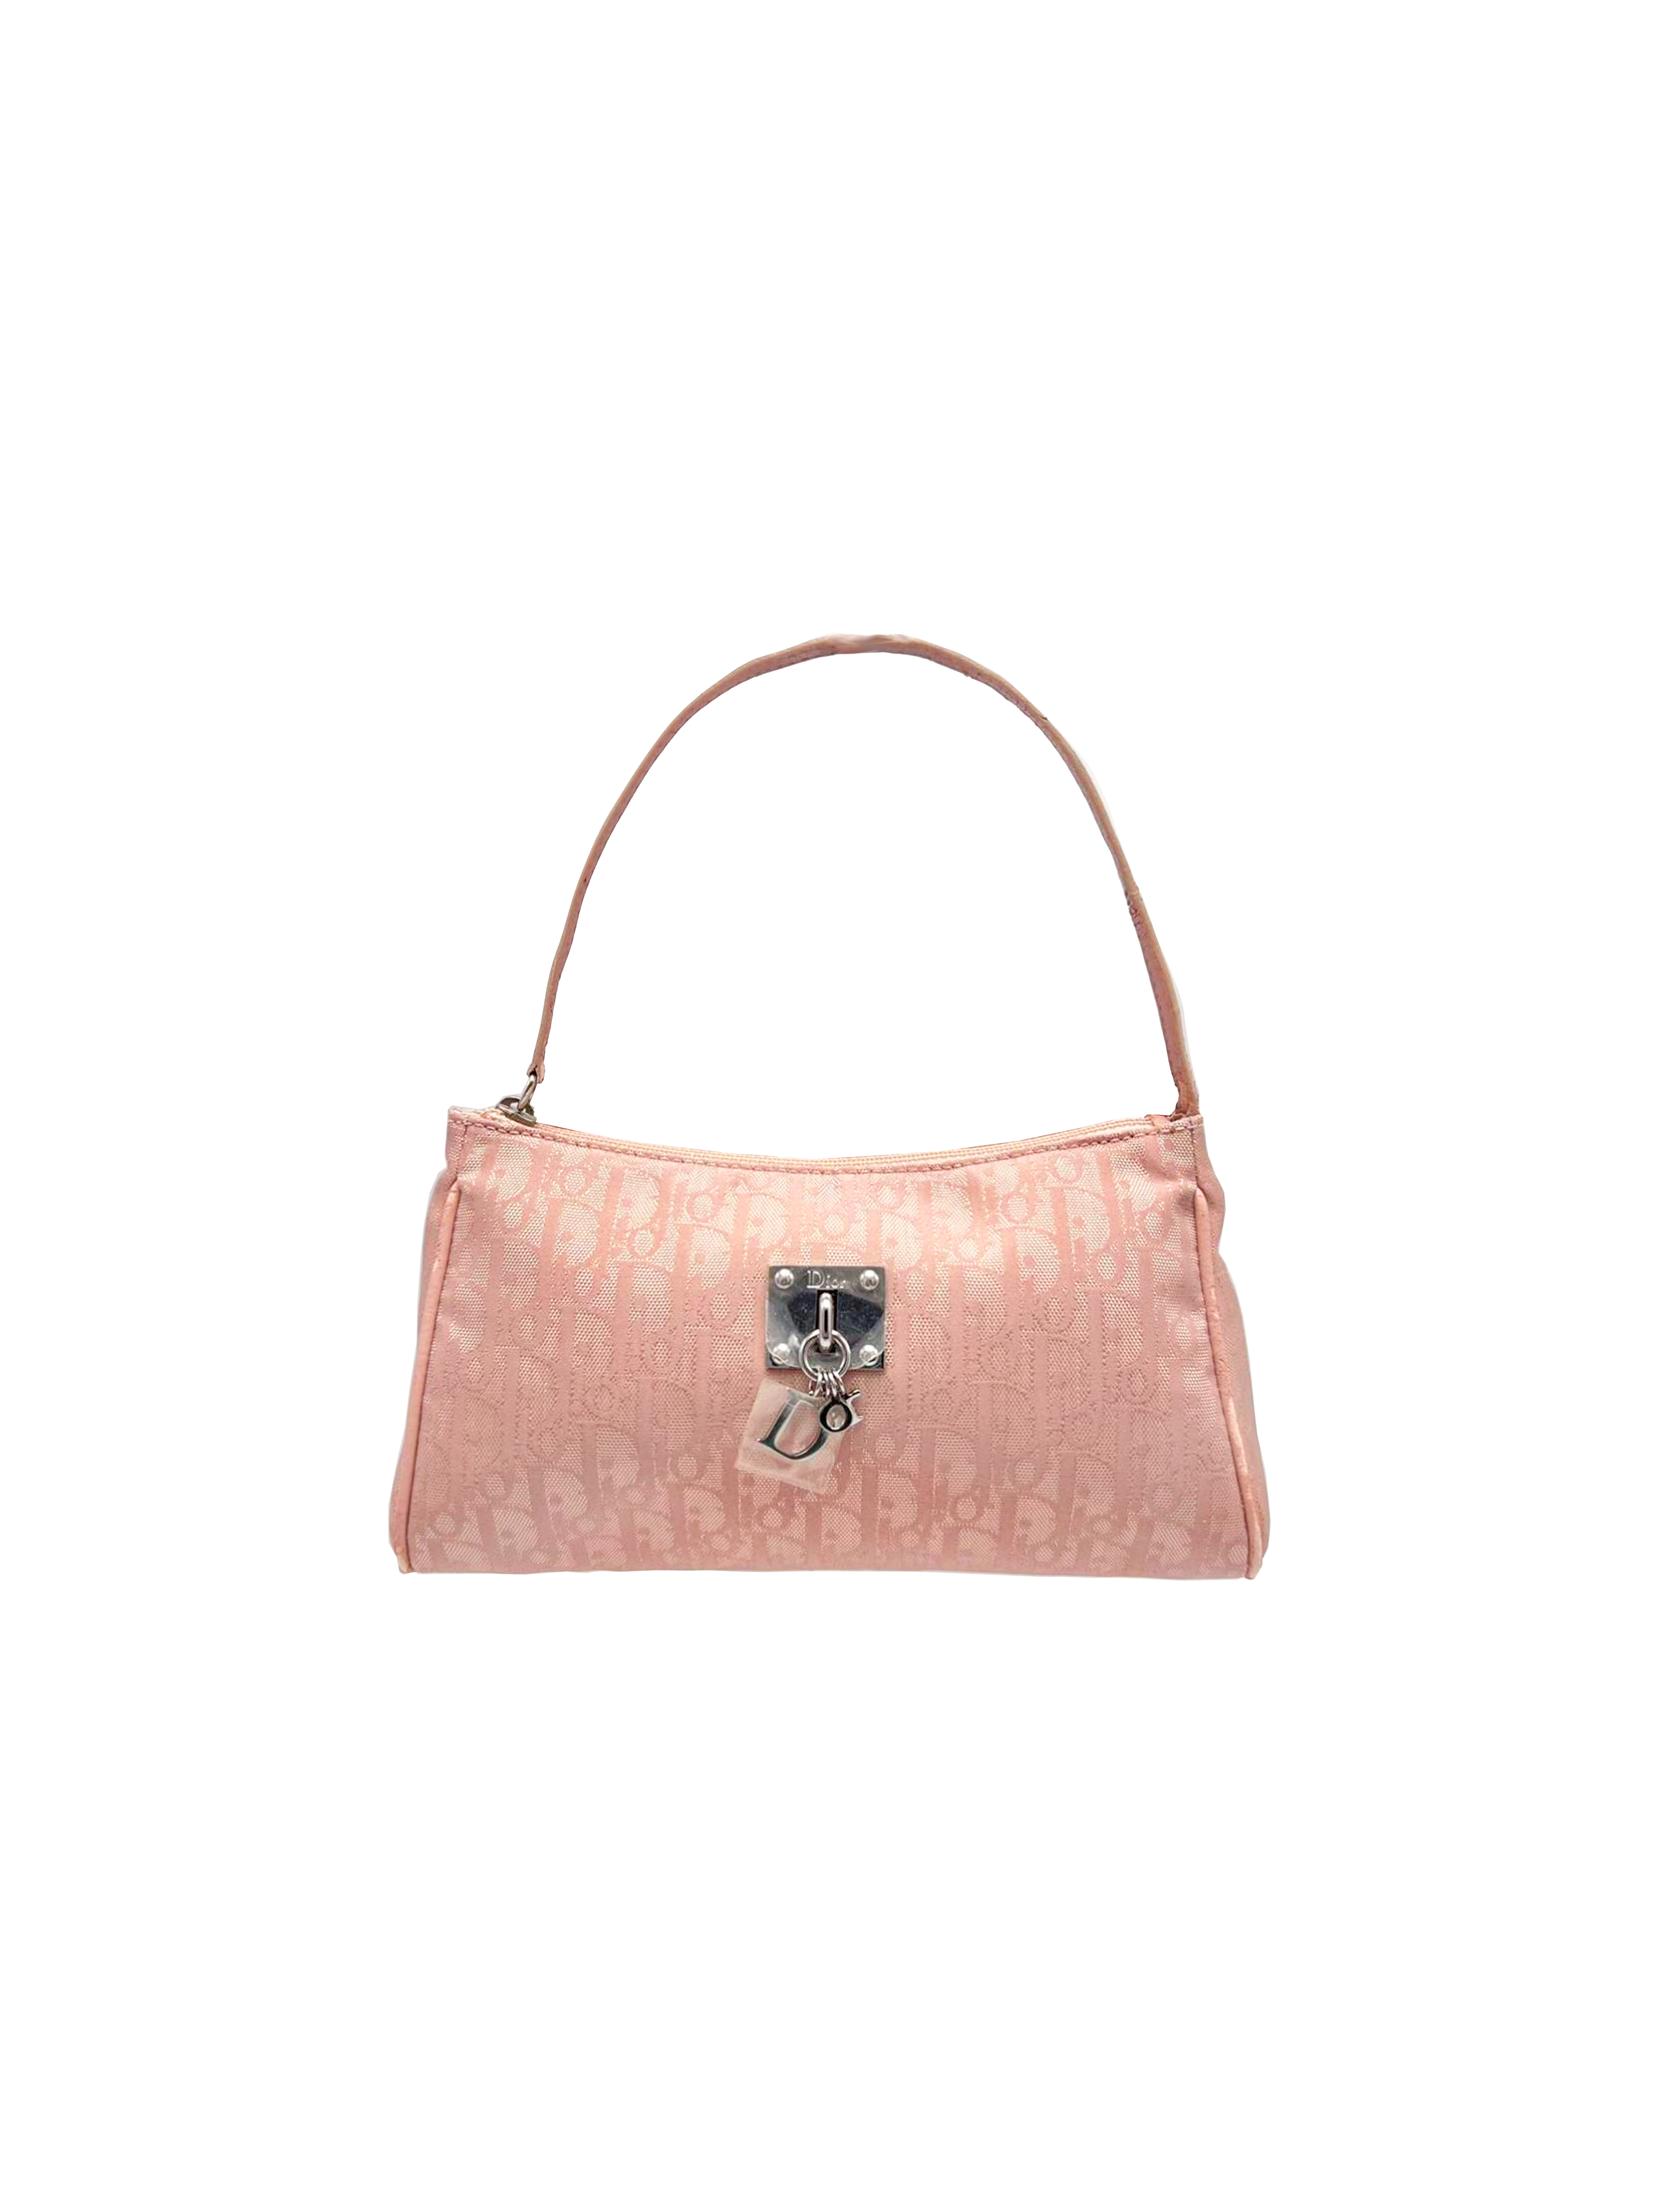 Christian Dior Pink Monogram Shoulder Bag Vintage 00s proof of  authenticity  Vinted